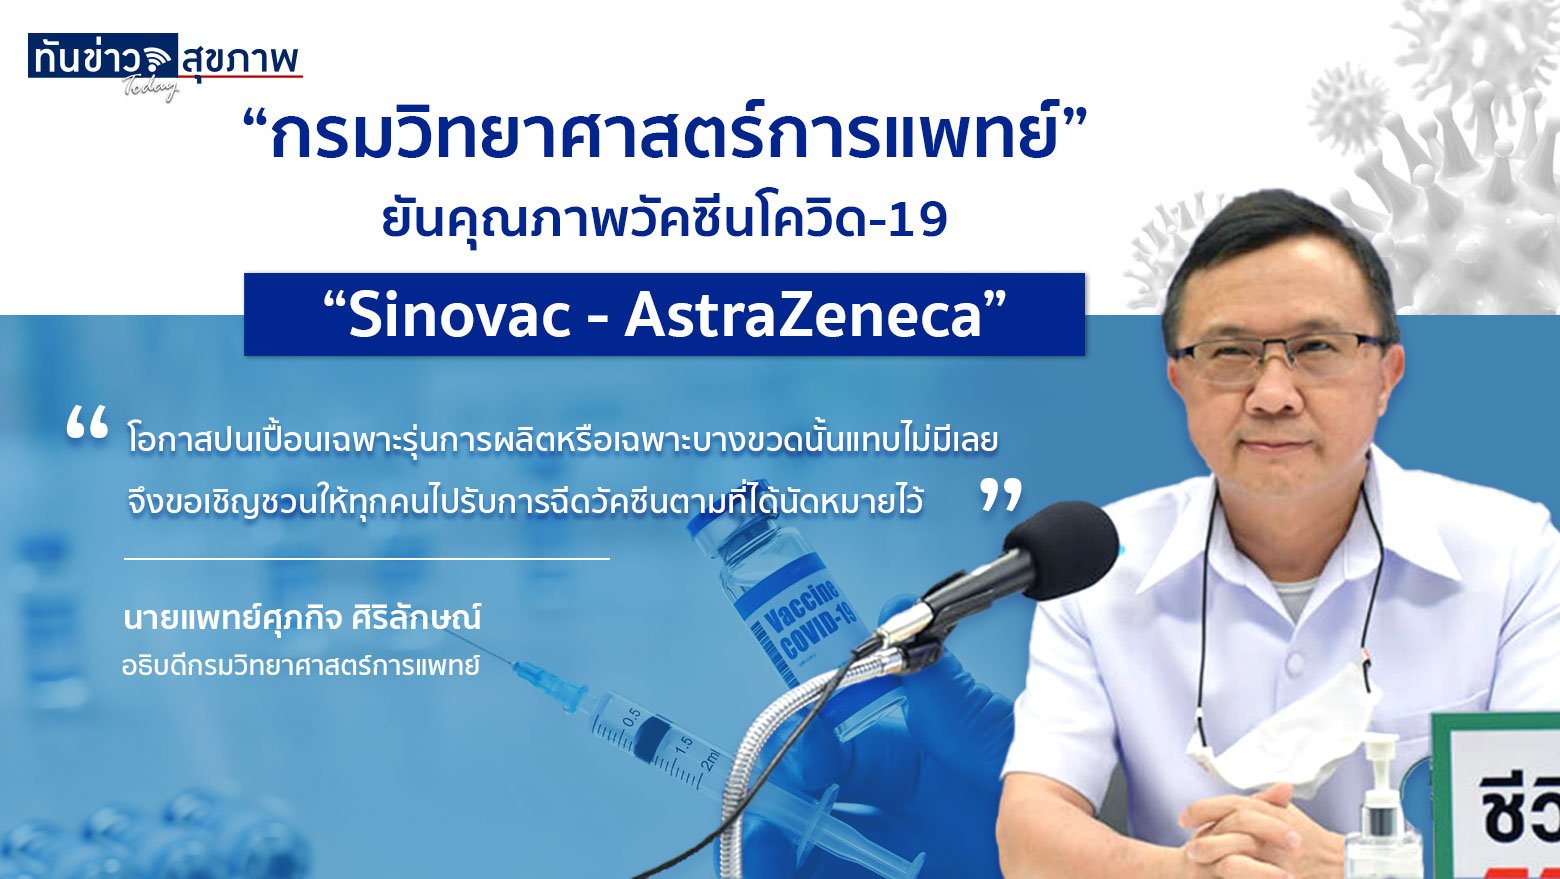 “กรมวิทยาศาสตร์การแพทย์” ยันคุณภาพ วัคซีนโควิด-19 “Sinovac – AstraZeneca”